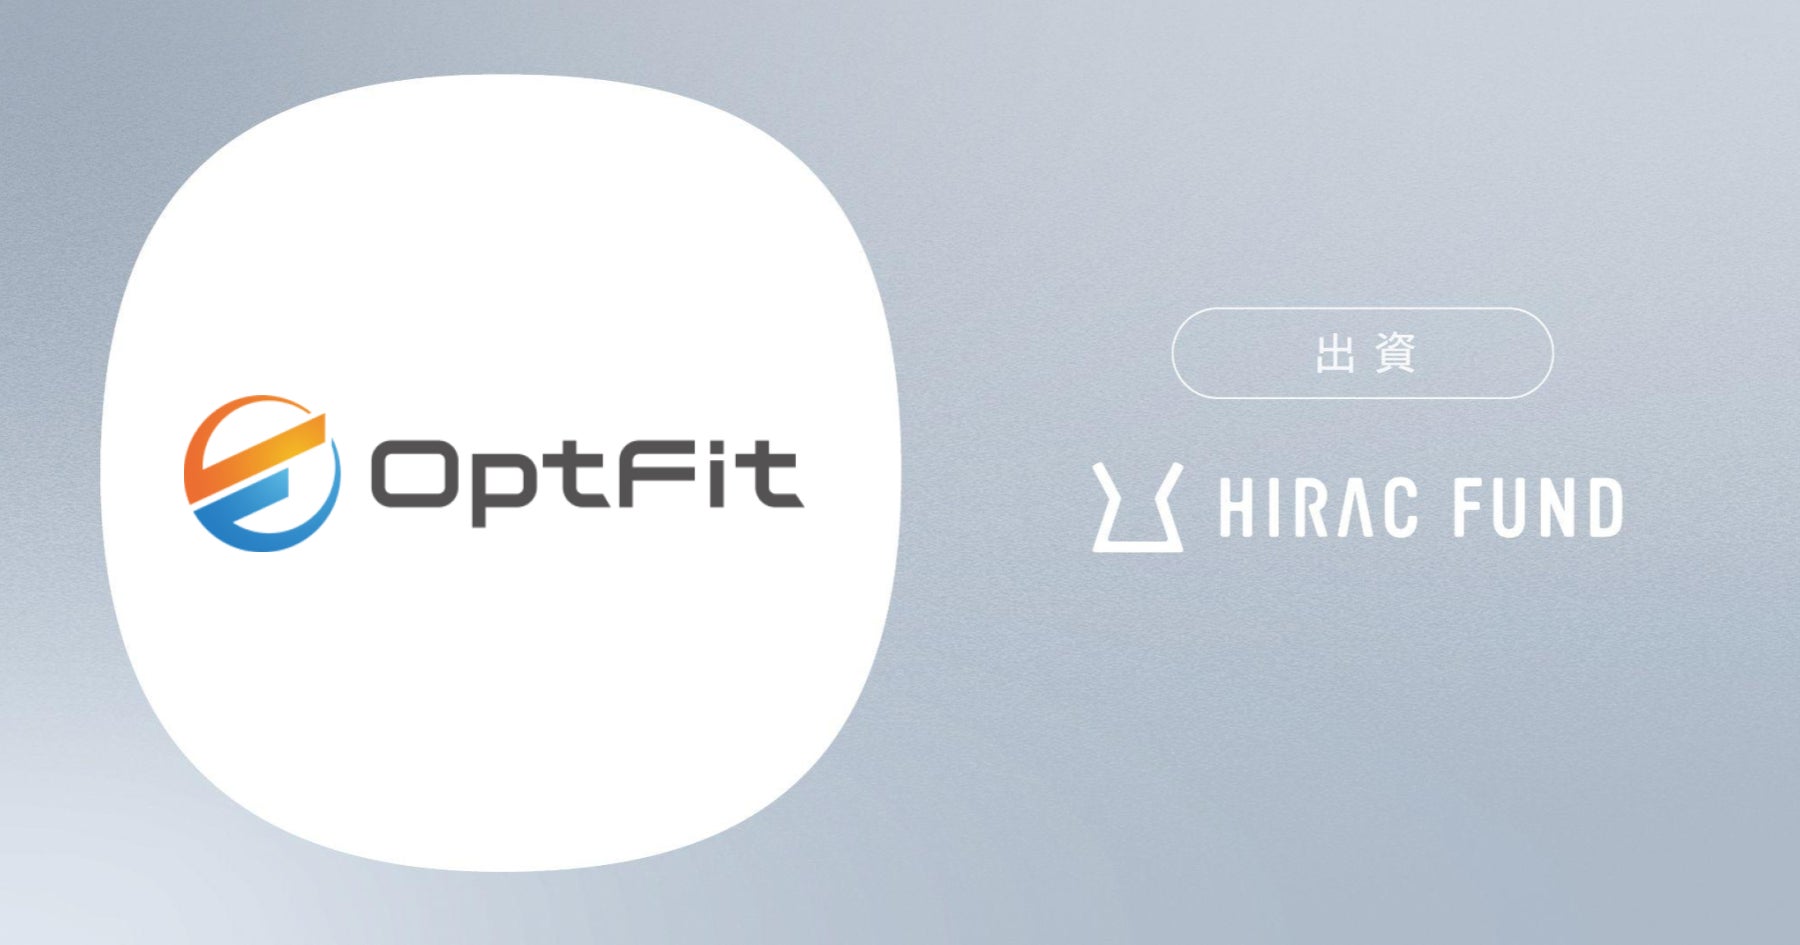 HIRAC FUND、フィットネスジム専用AI画像解析サービスを提供するOpt Fitに出資